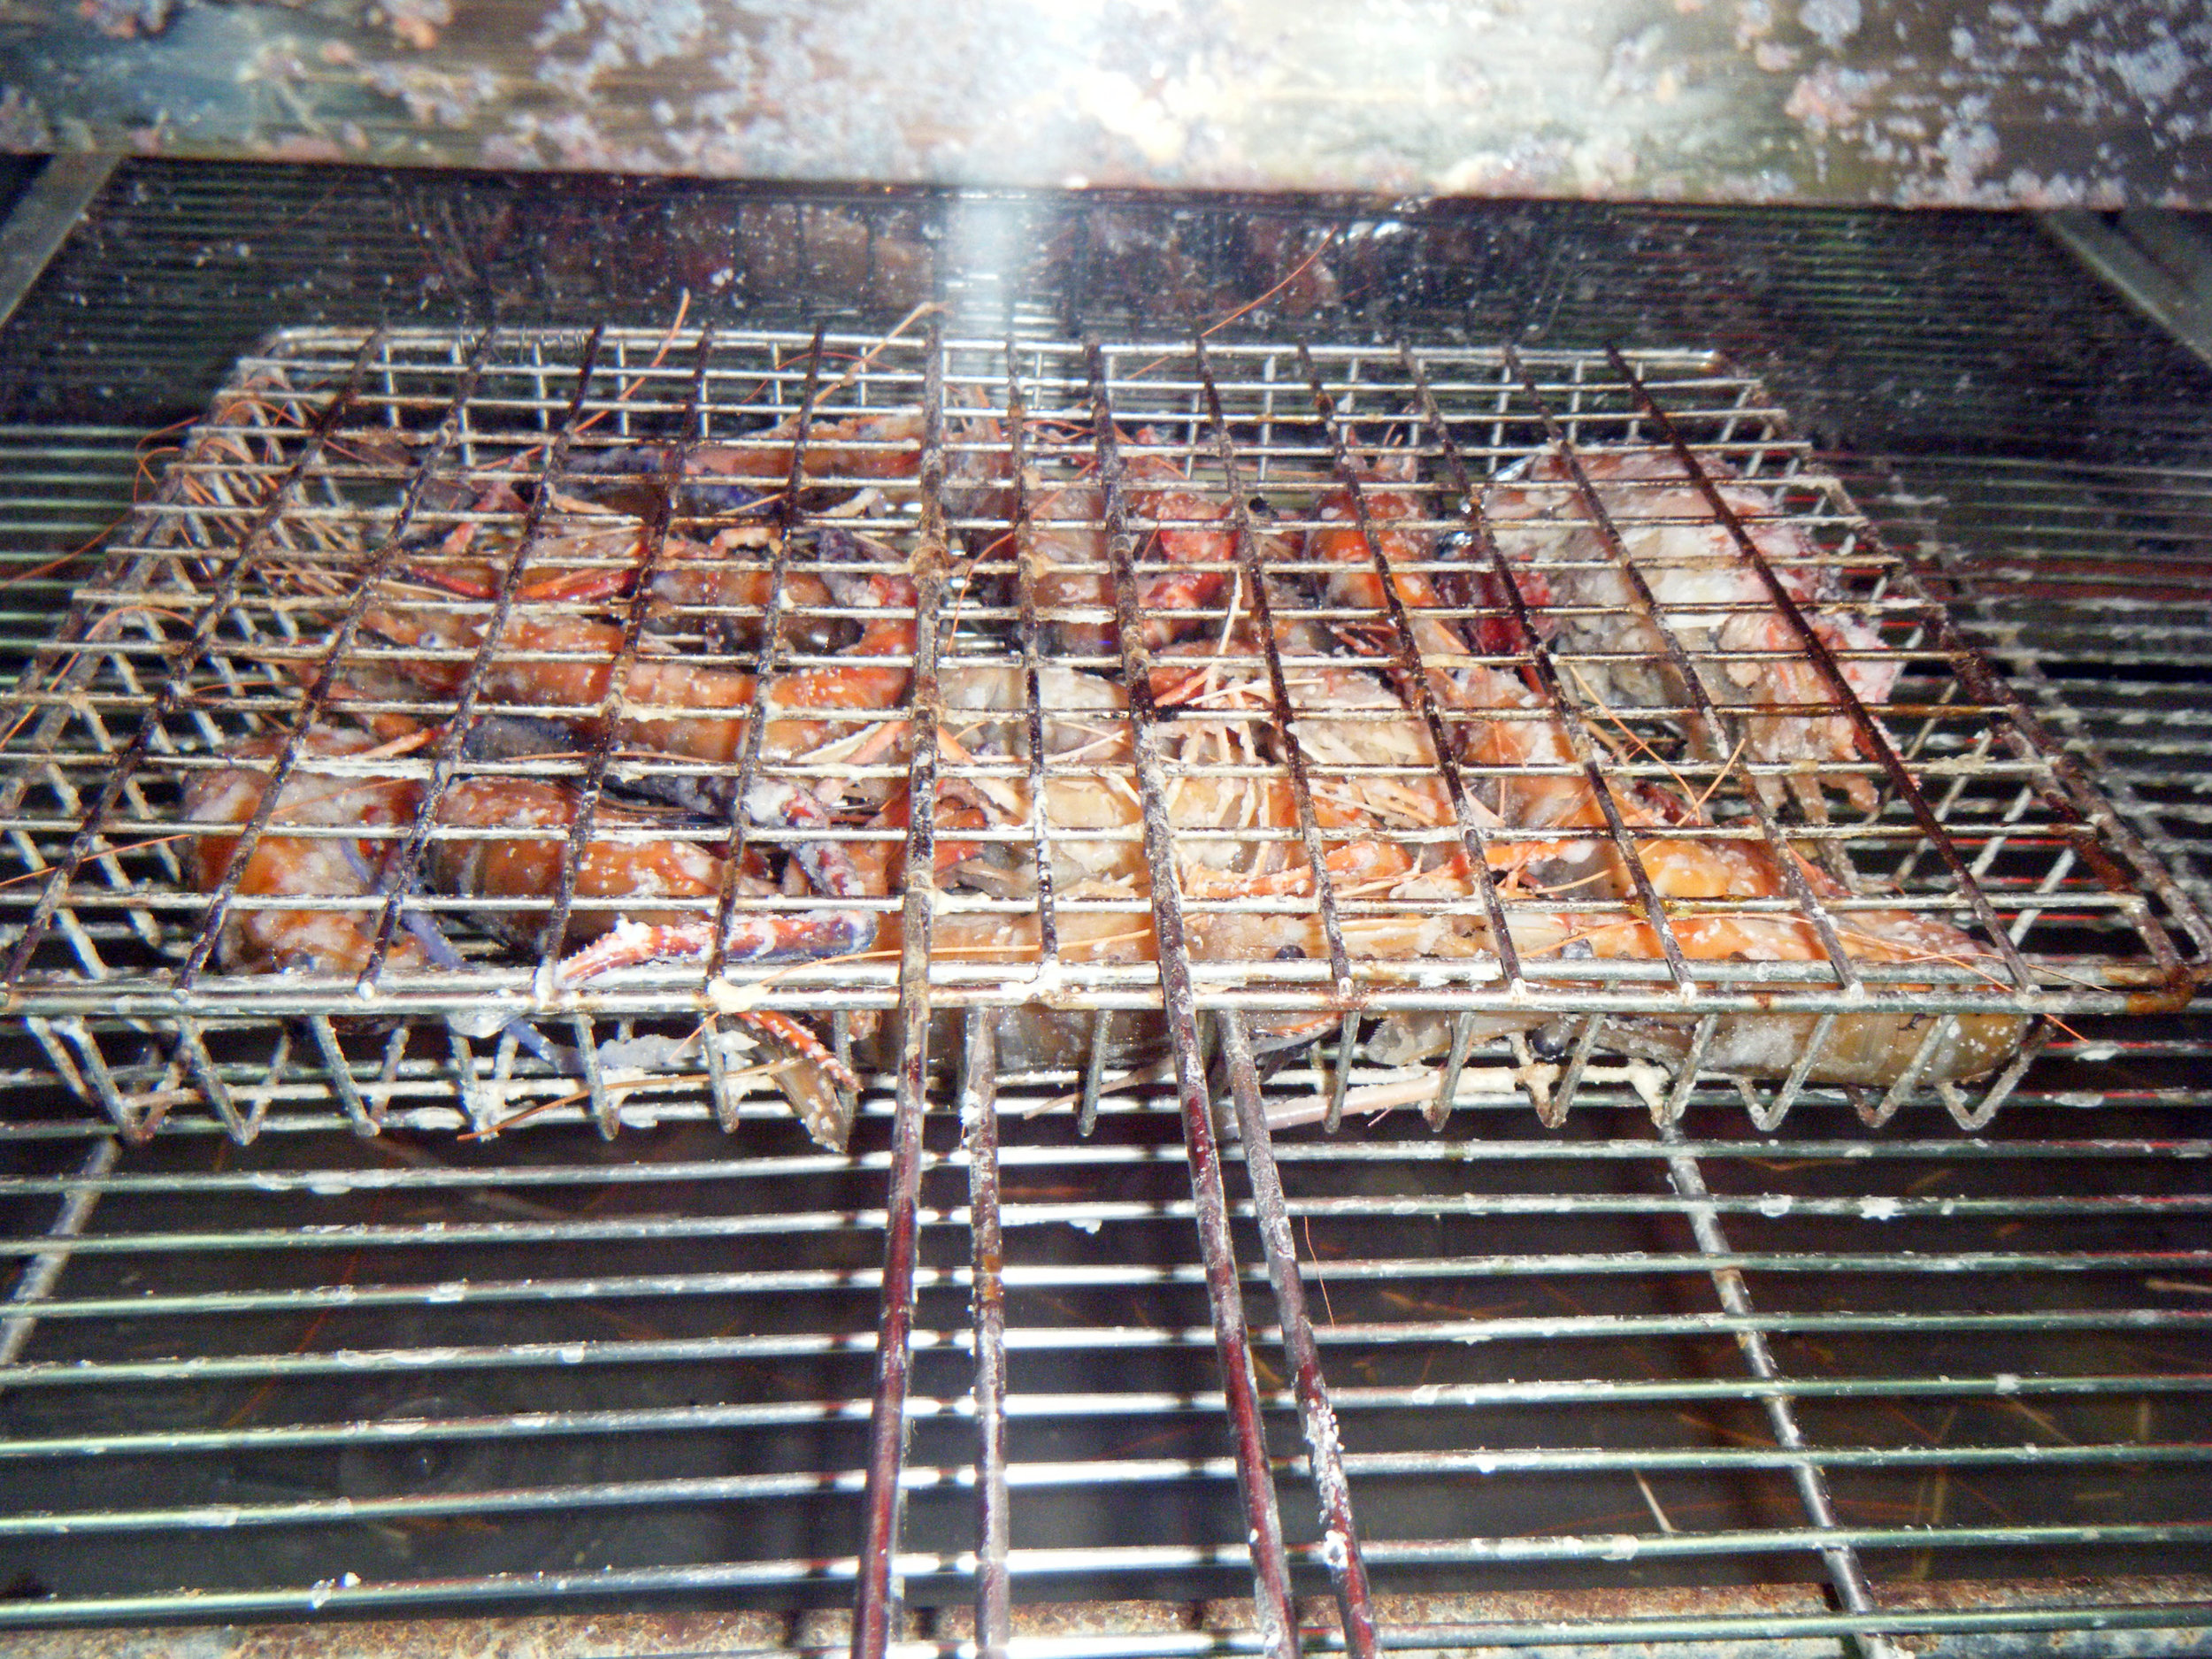 shrimping in Beidou.jpg